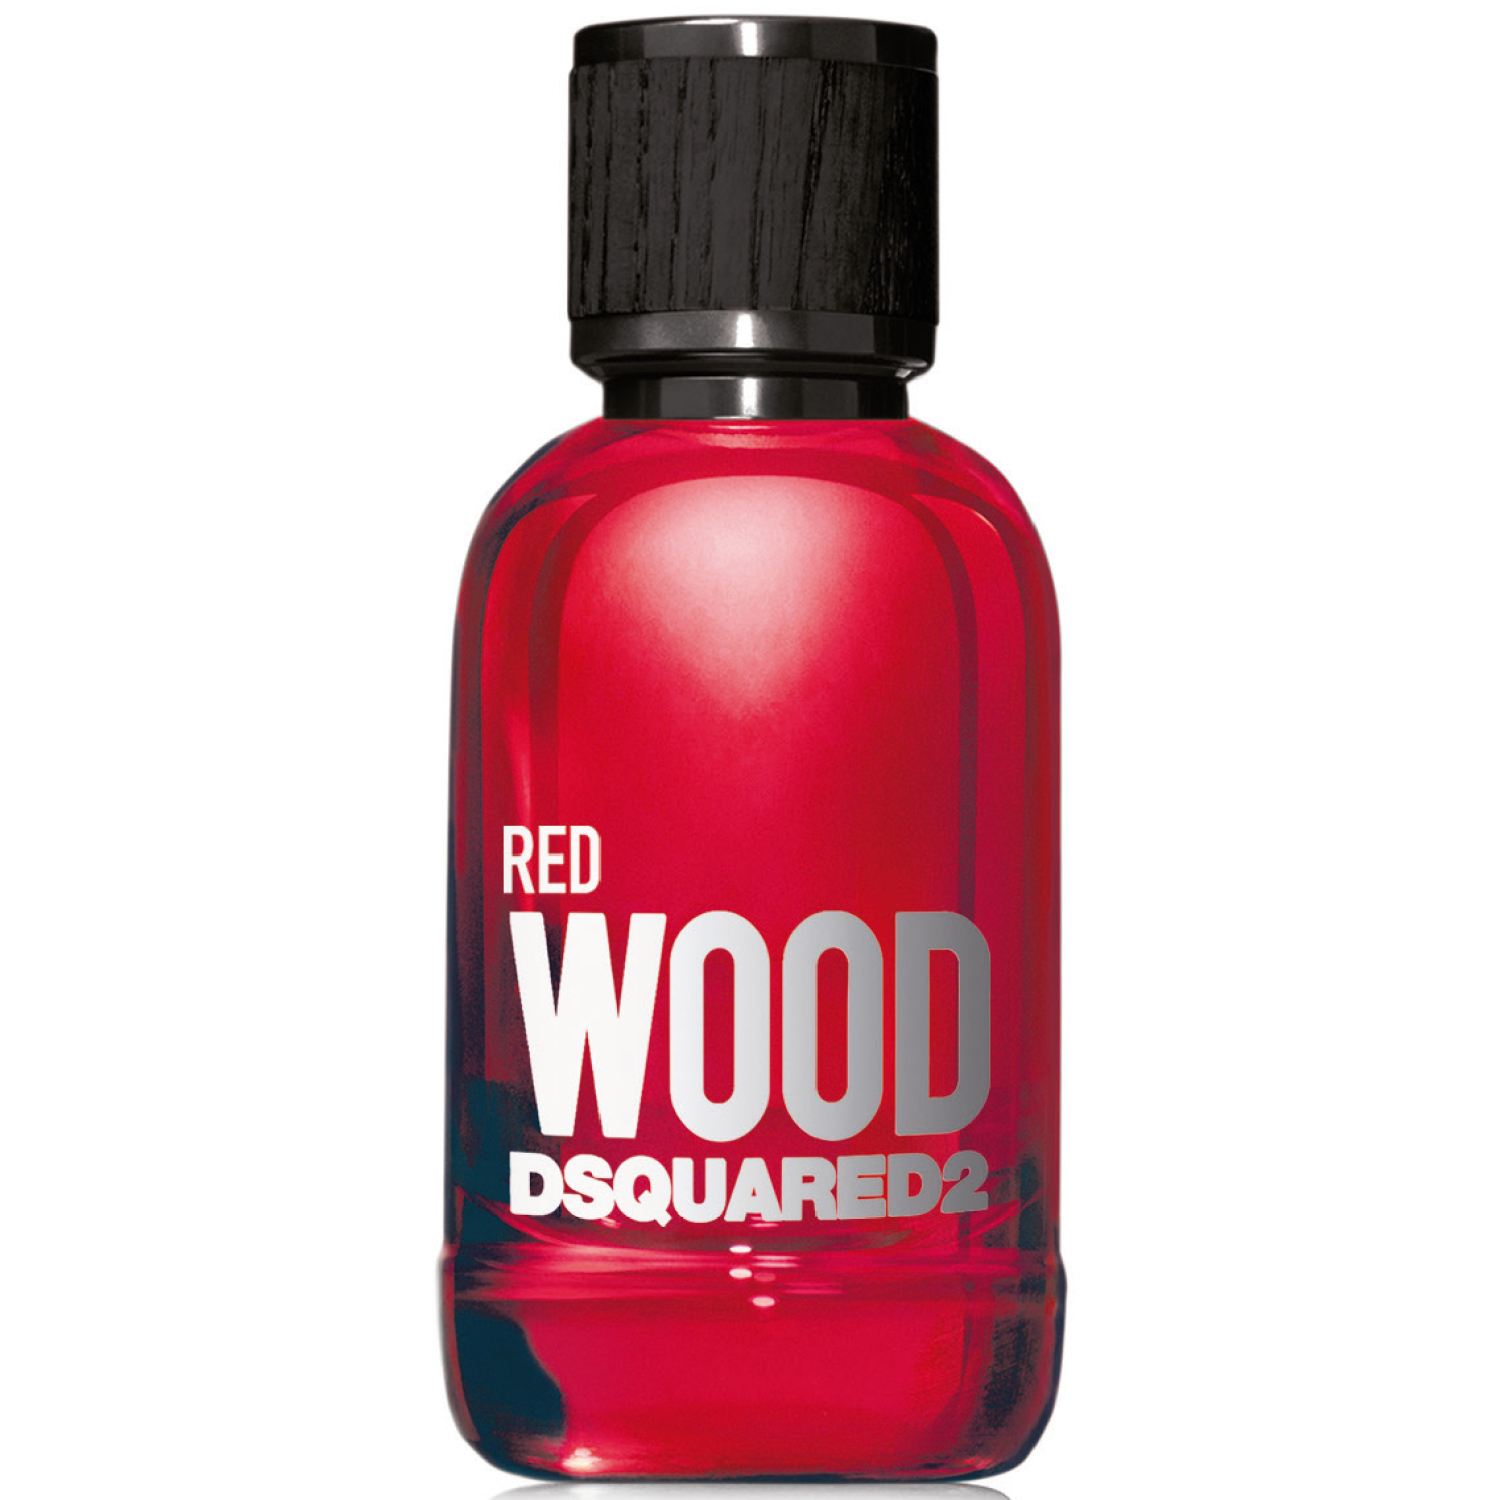 Dsquared² Red Wood eau de toilette / 30 ml / dames